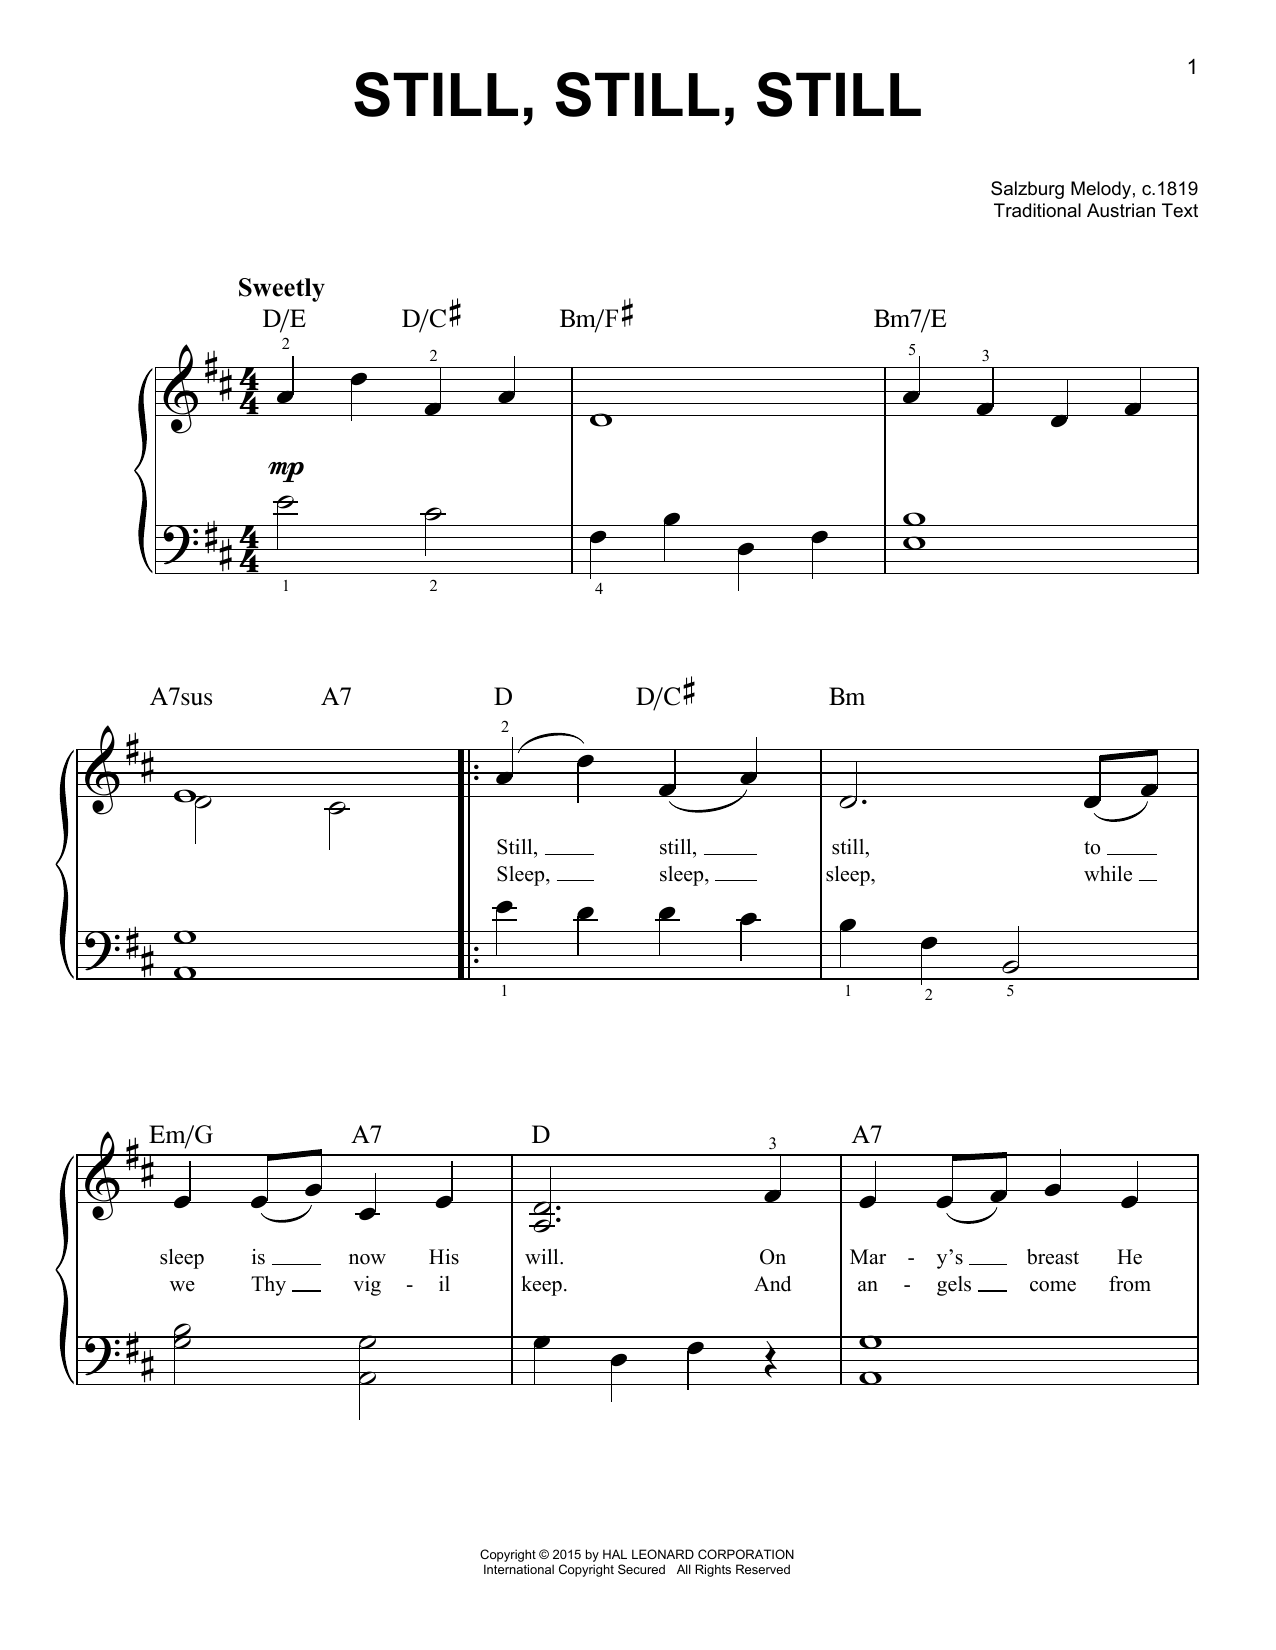 Salzburg Melody, c.1819 Still, Still, Still sheet music notes and chords arranged for Cello Duet